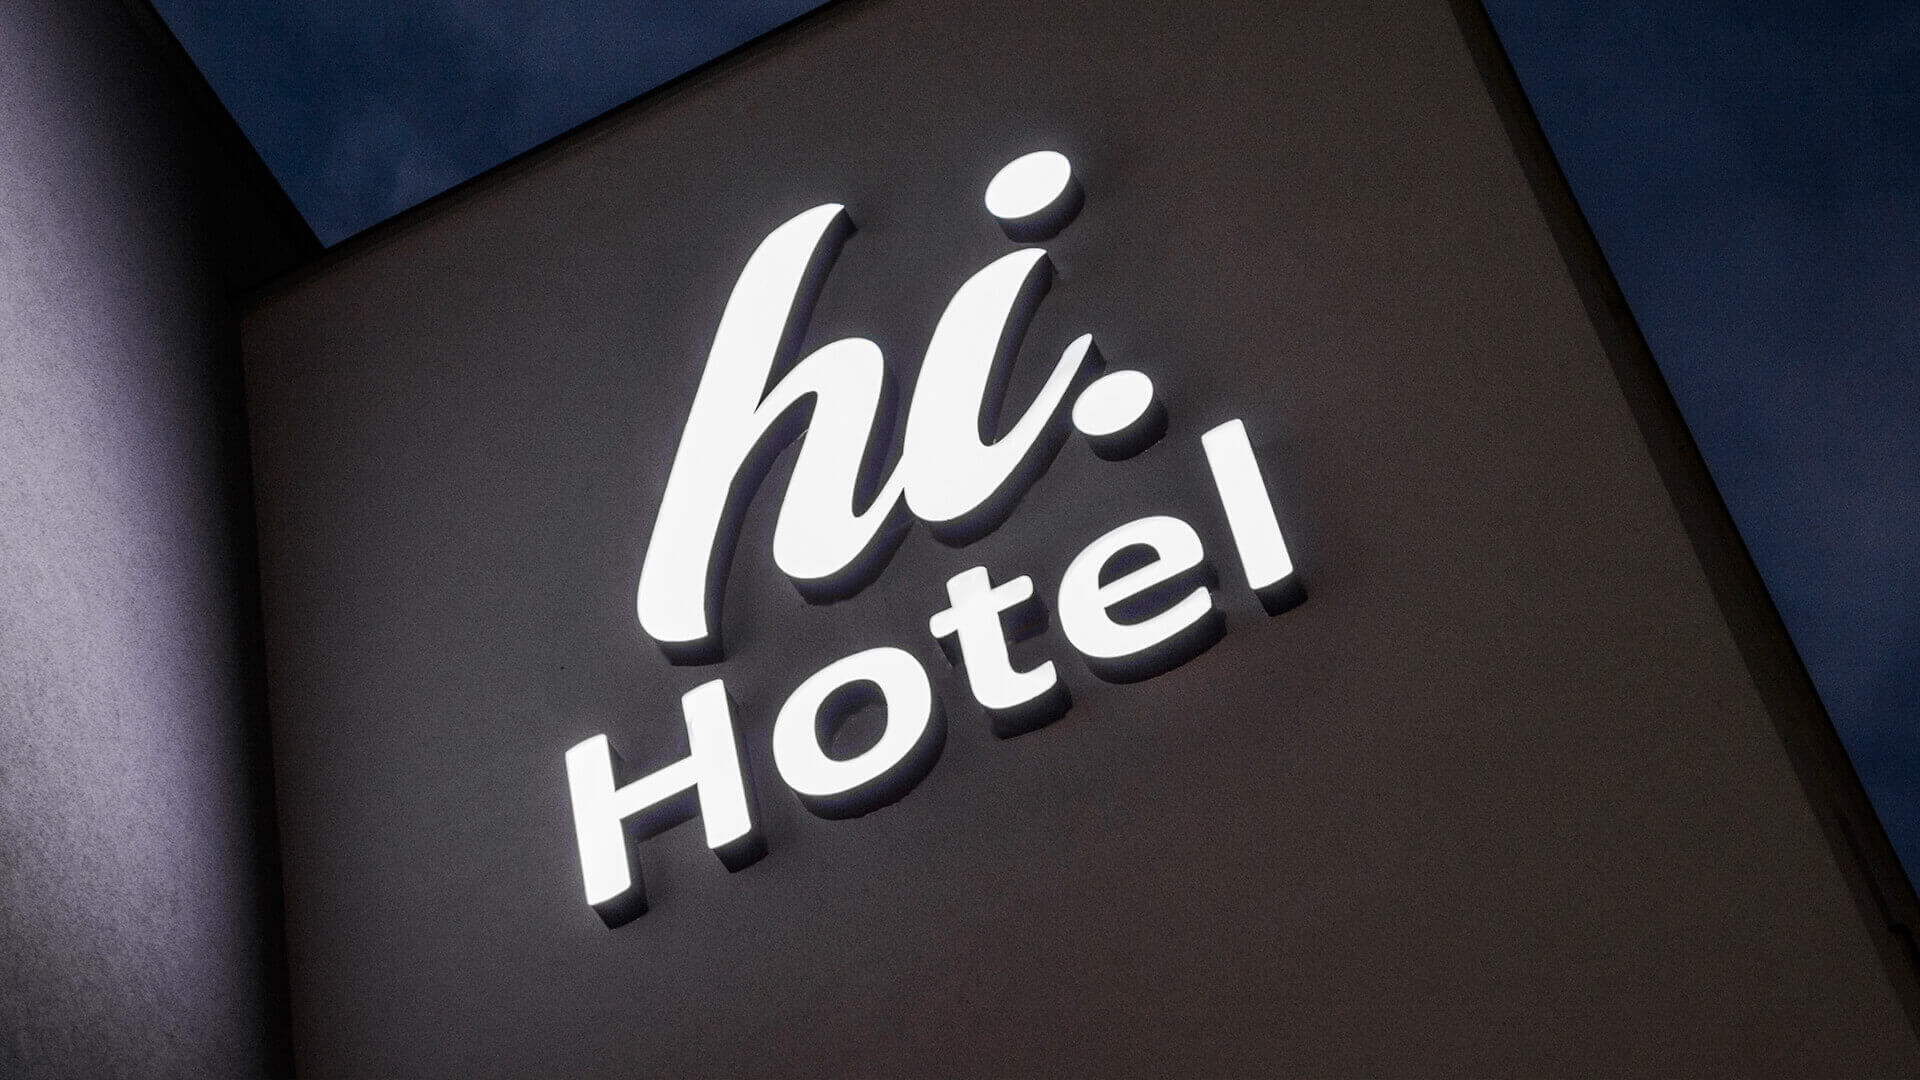 Hallo Hotel hihotel - hi-hotel-an-der-Wand-an-der-Hinterwand-an-unter-dem-Licht-an-dem-Eingang-an-der-Höhe-an-den-Linien-an-der-Firma-an-dem-Beton-gdansk-lotnisko (4)